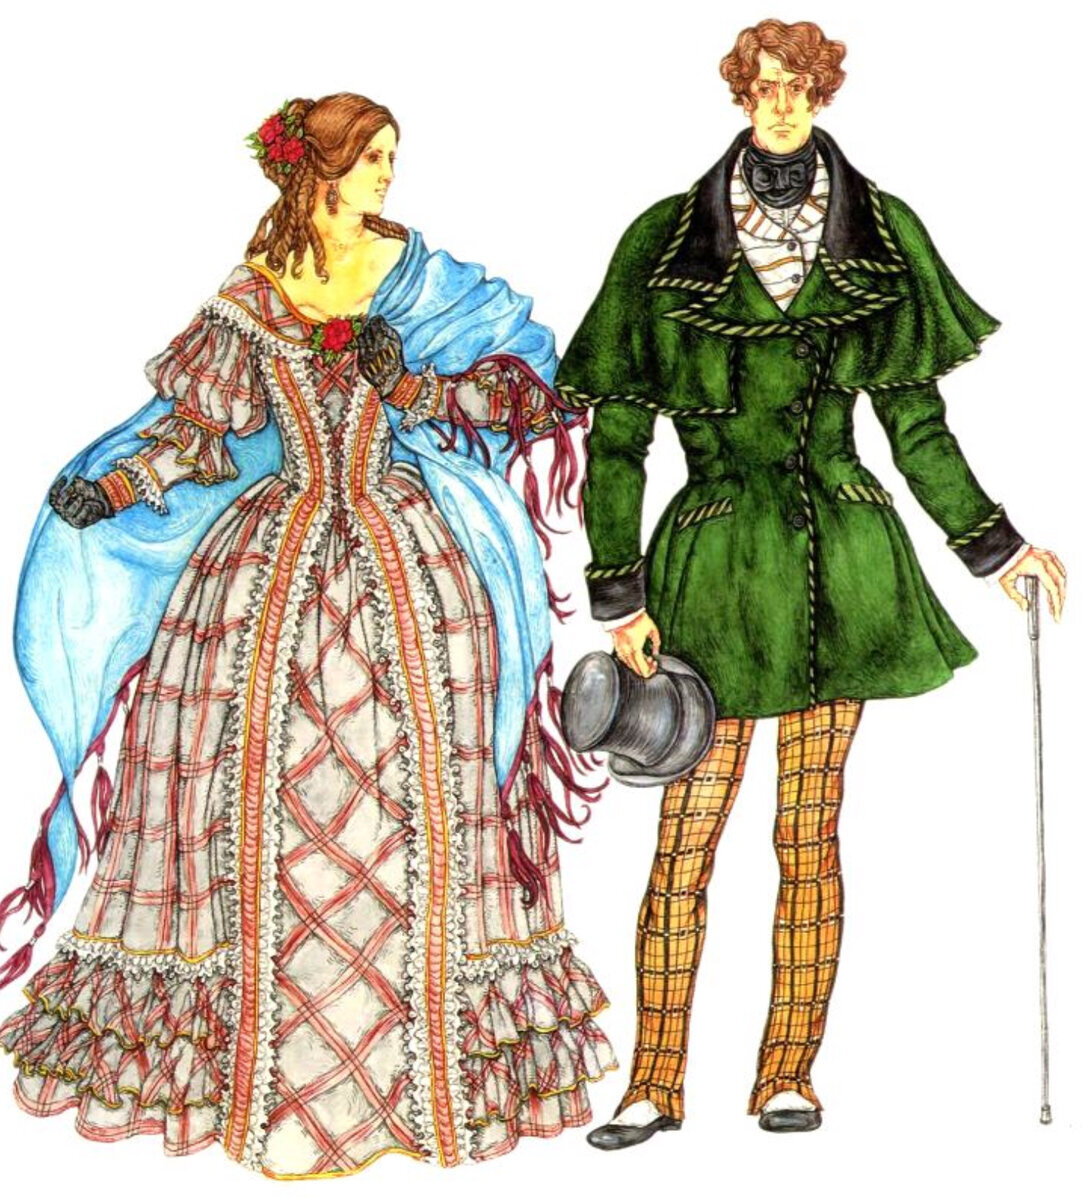 Мужской костюм стиля второе рококо 19 века.